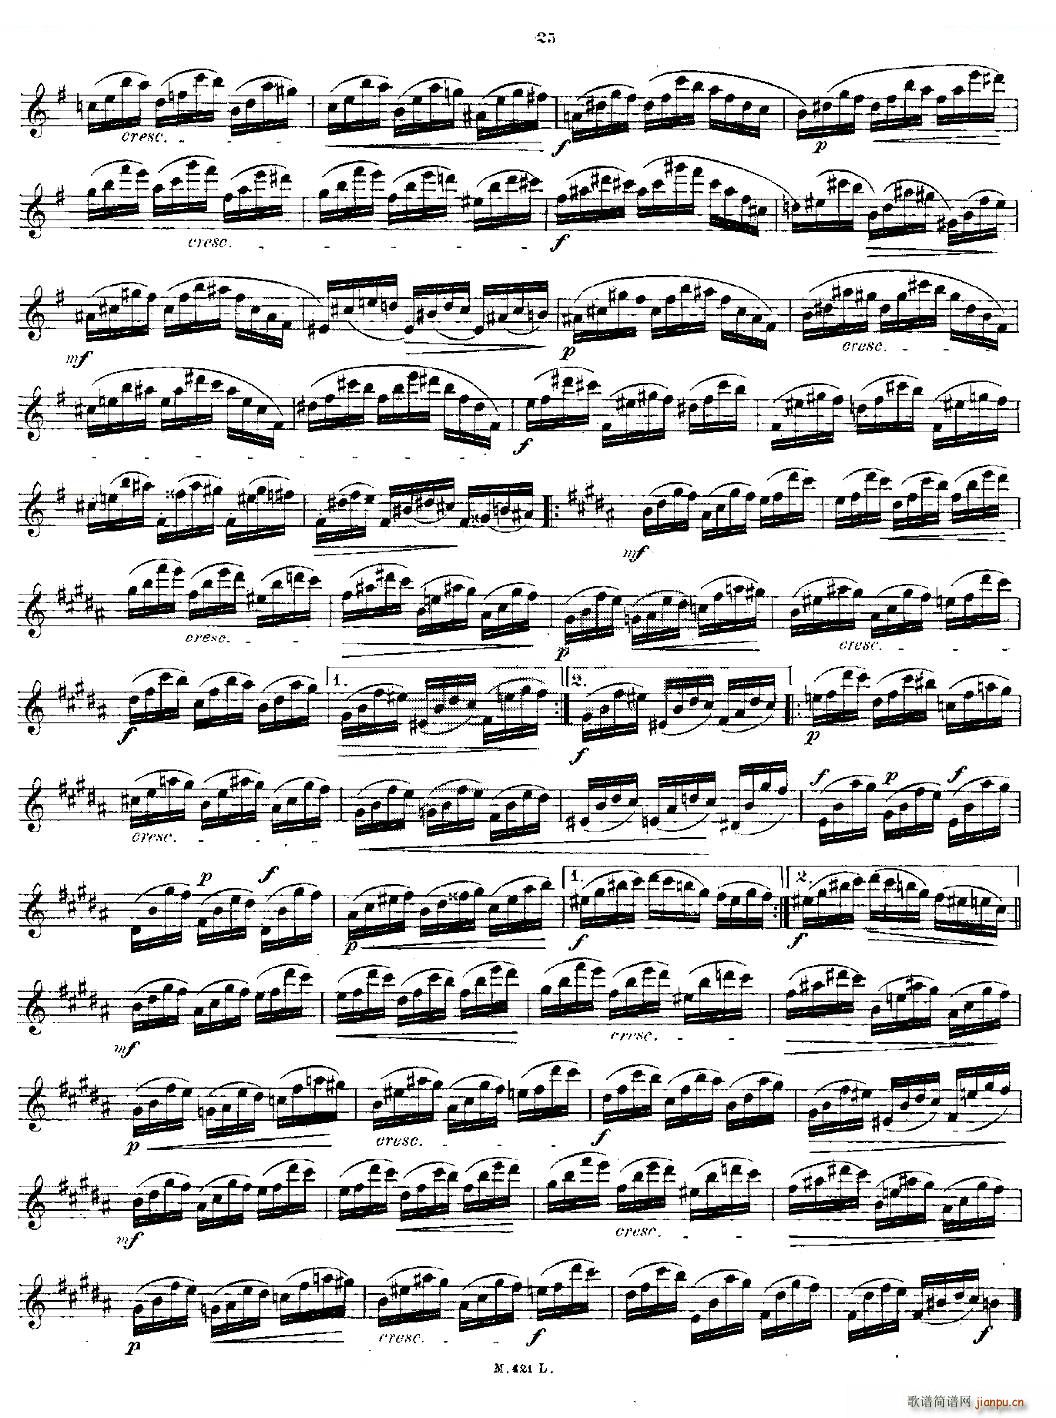 24首长笛练习曲 Op 15 之11 15 铜管(笛箫谱)3